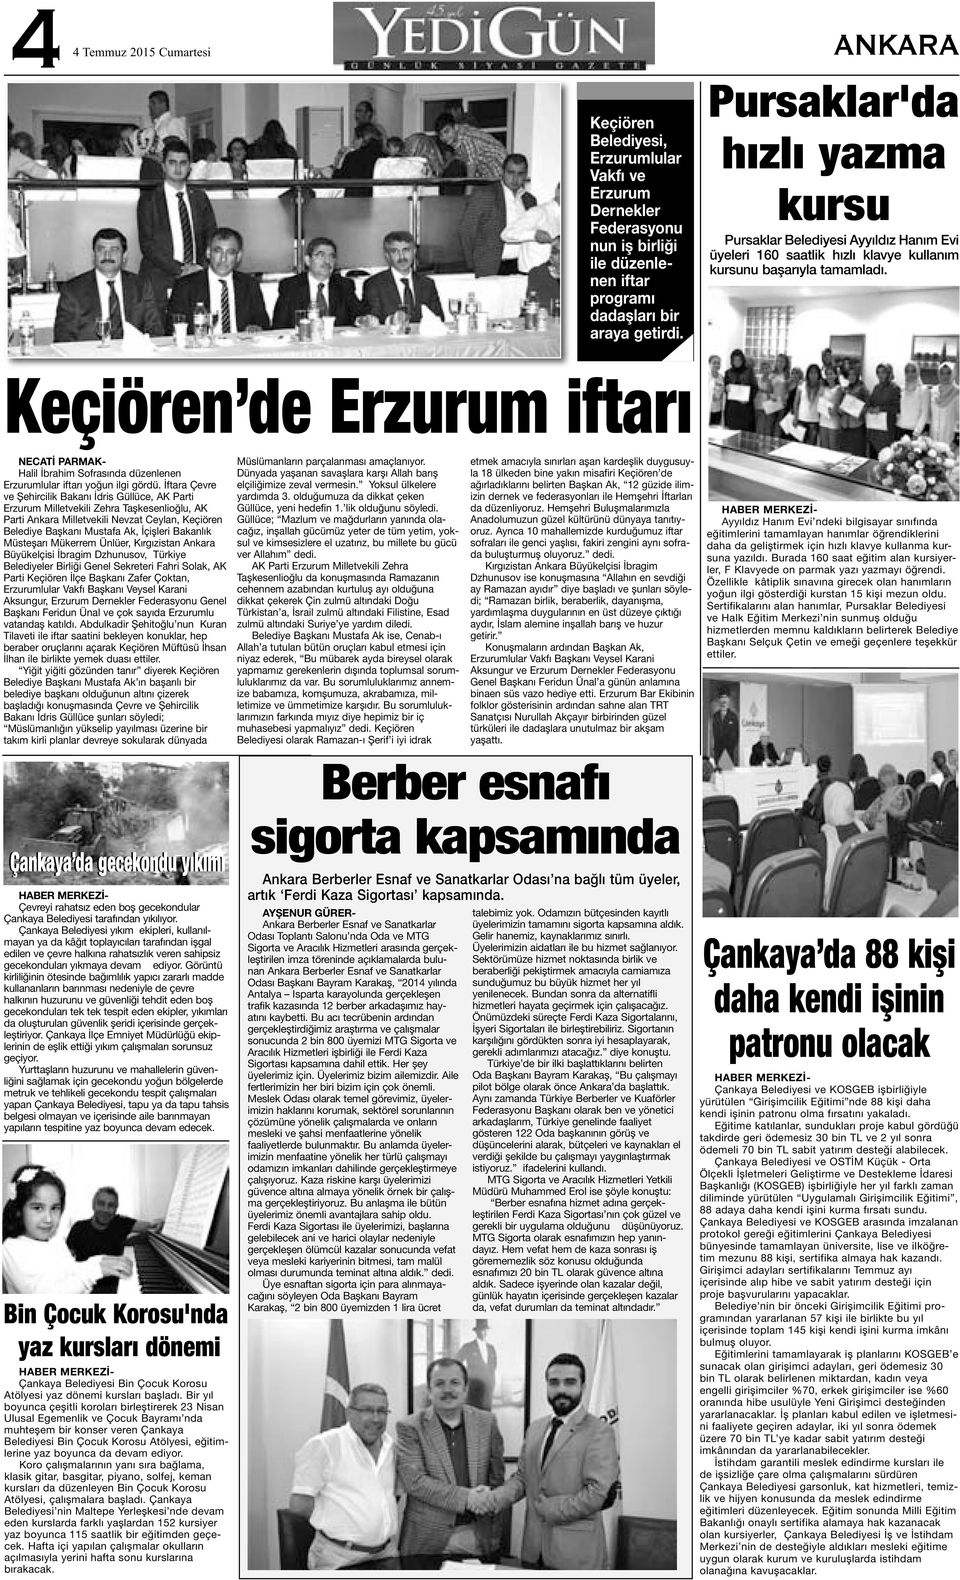 Keçiören de Erzurum iftarı NECATİ PARMAK- Halil İbrahim Sofrasında düzenlenen Erzurumlular iftarı yoğun ilgi gördü.